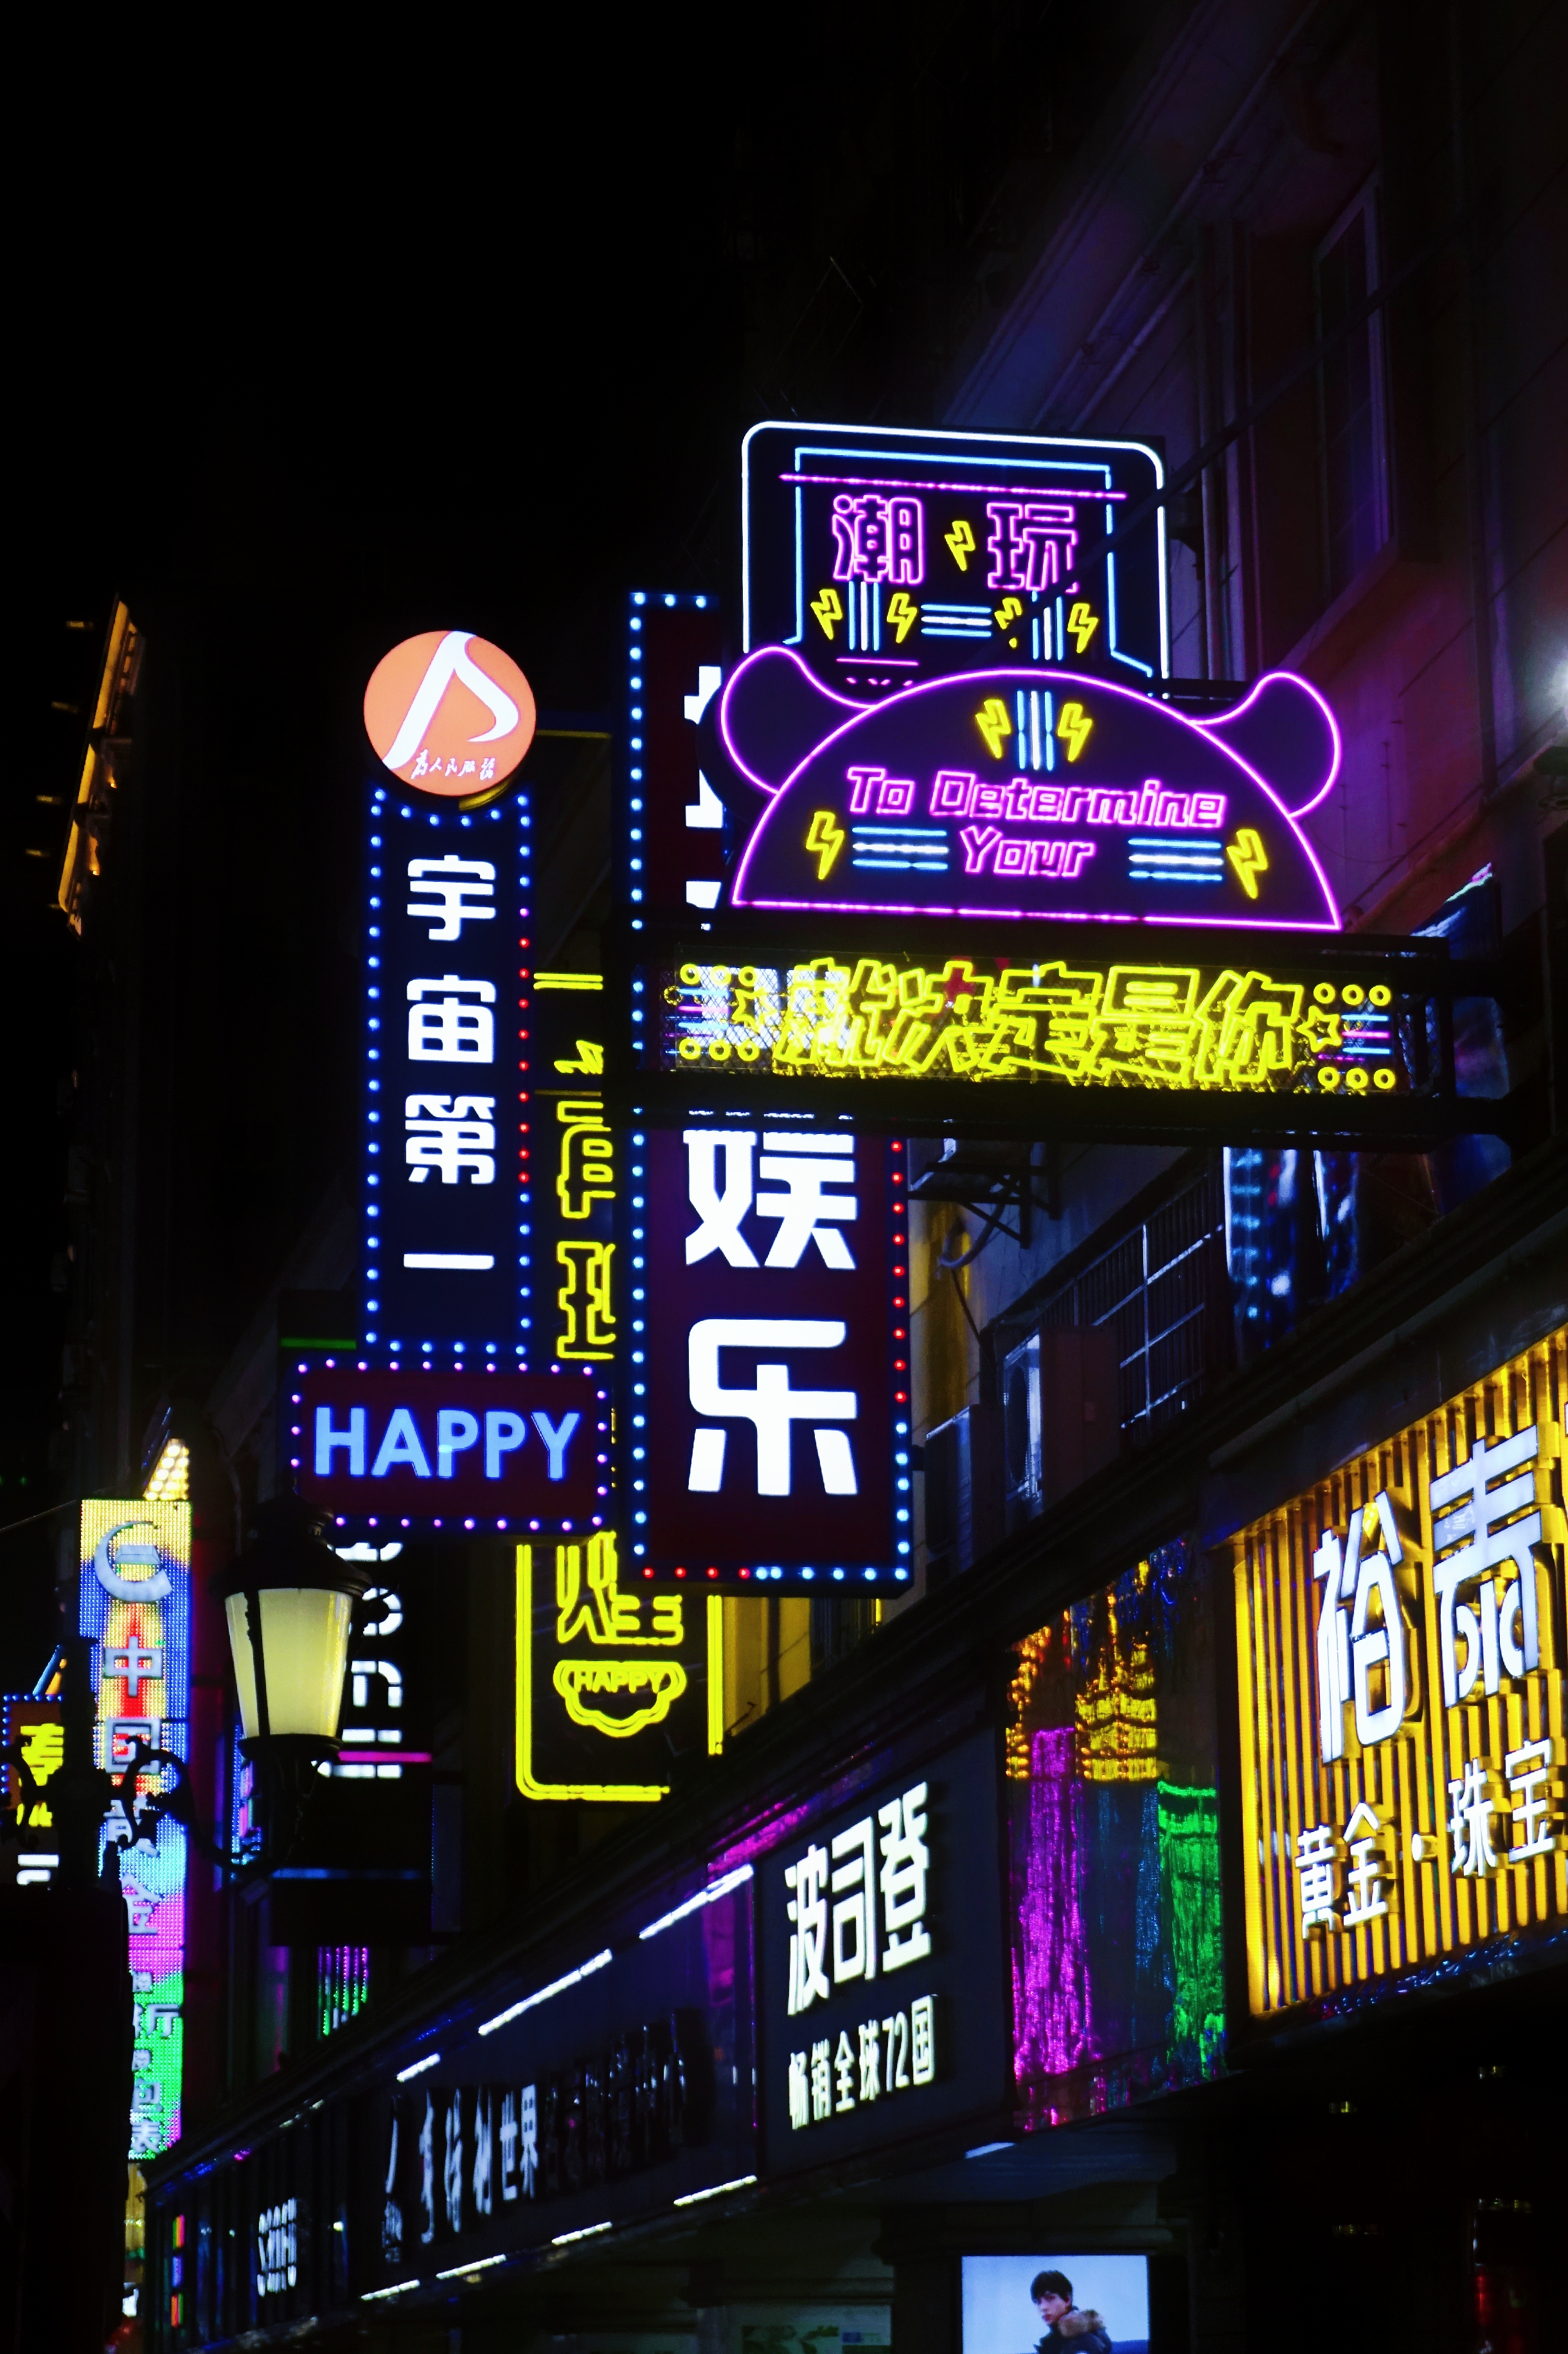 上海外滩国庆灯光秀流光溢彩 引众多游客齐欣赏-新闻频道-长城网